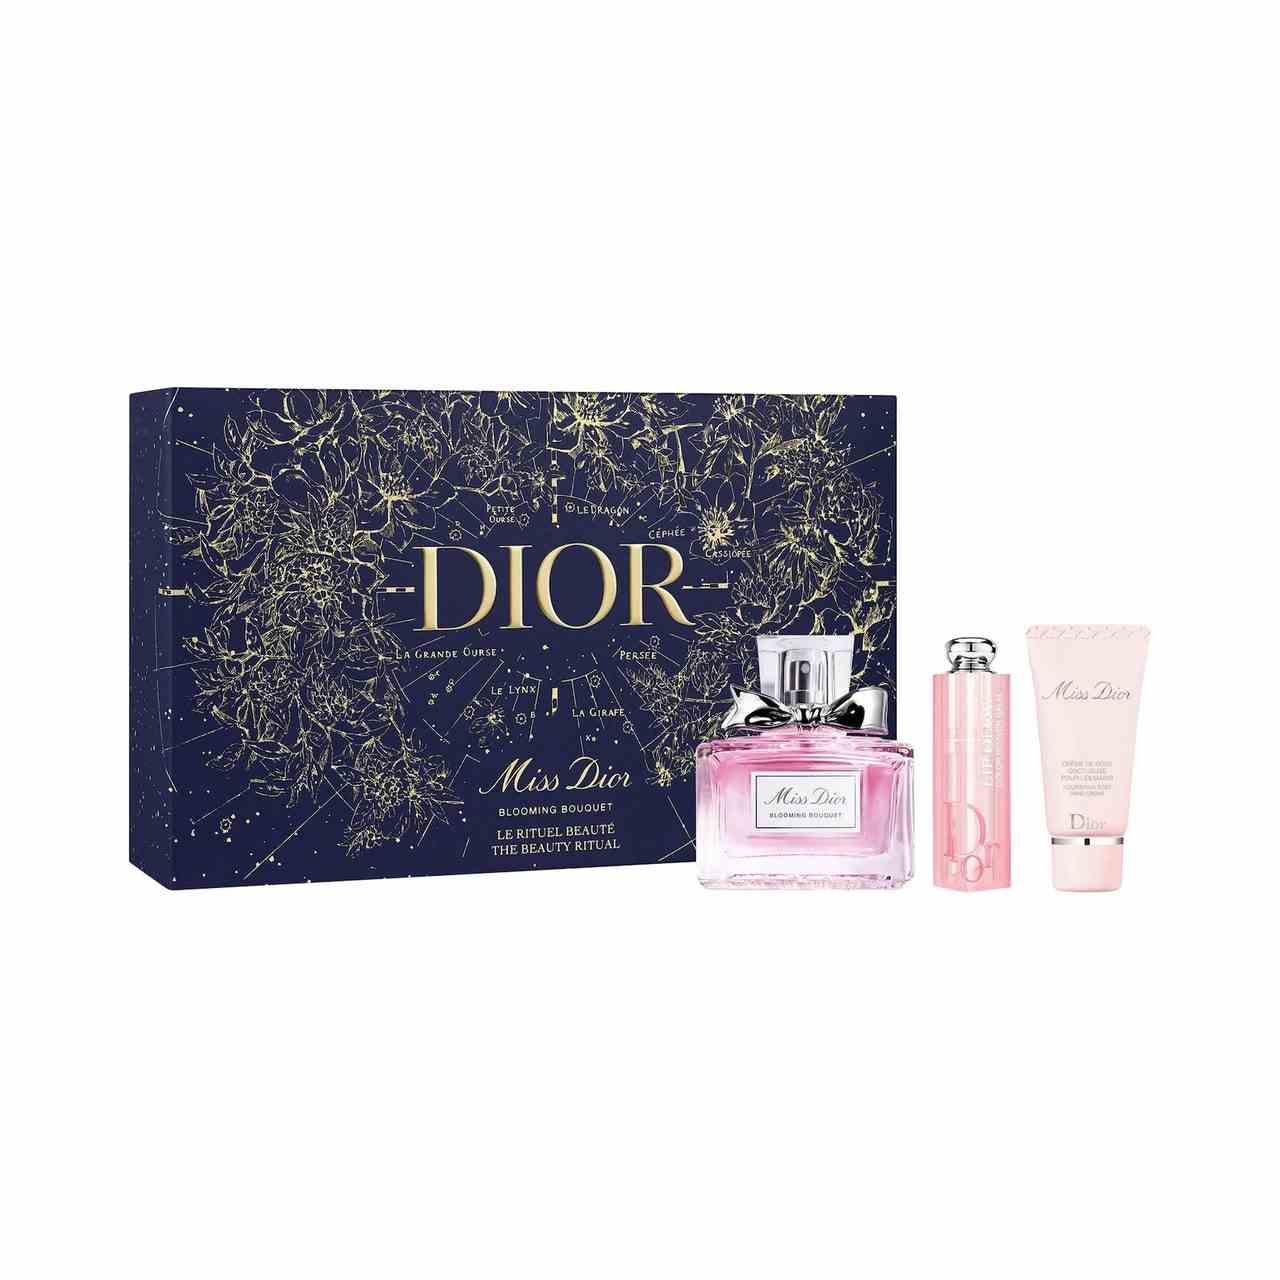 Dior Miss Dior Blooming Bouquet und Lip Glow Geschenkset rosafarbene Flasche Parfüm, Lippenbalsam und Lotion mit marineblauer und goldener Box auf weißem Hintergrund